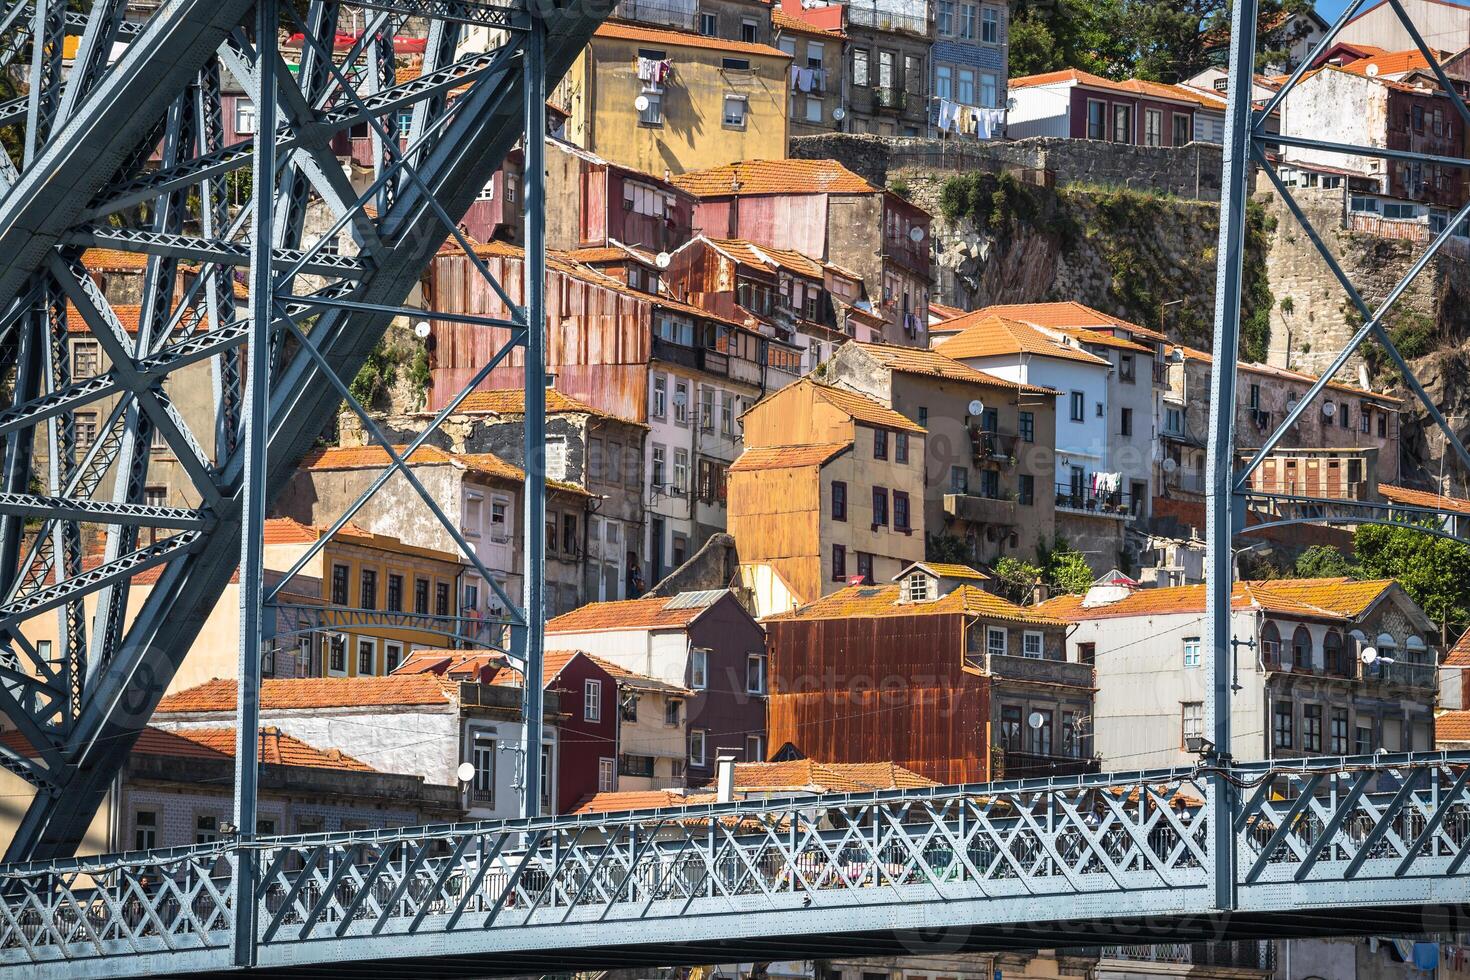 visie van dom luis ik brug in porto, Portugal foto